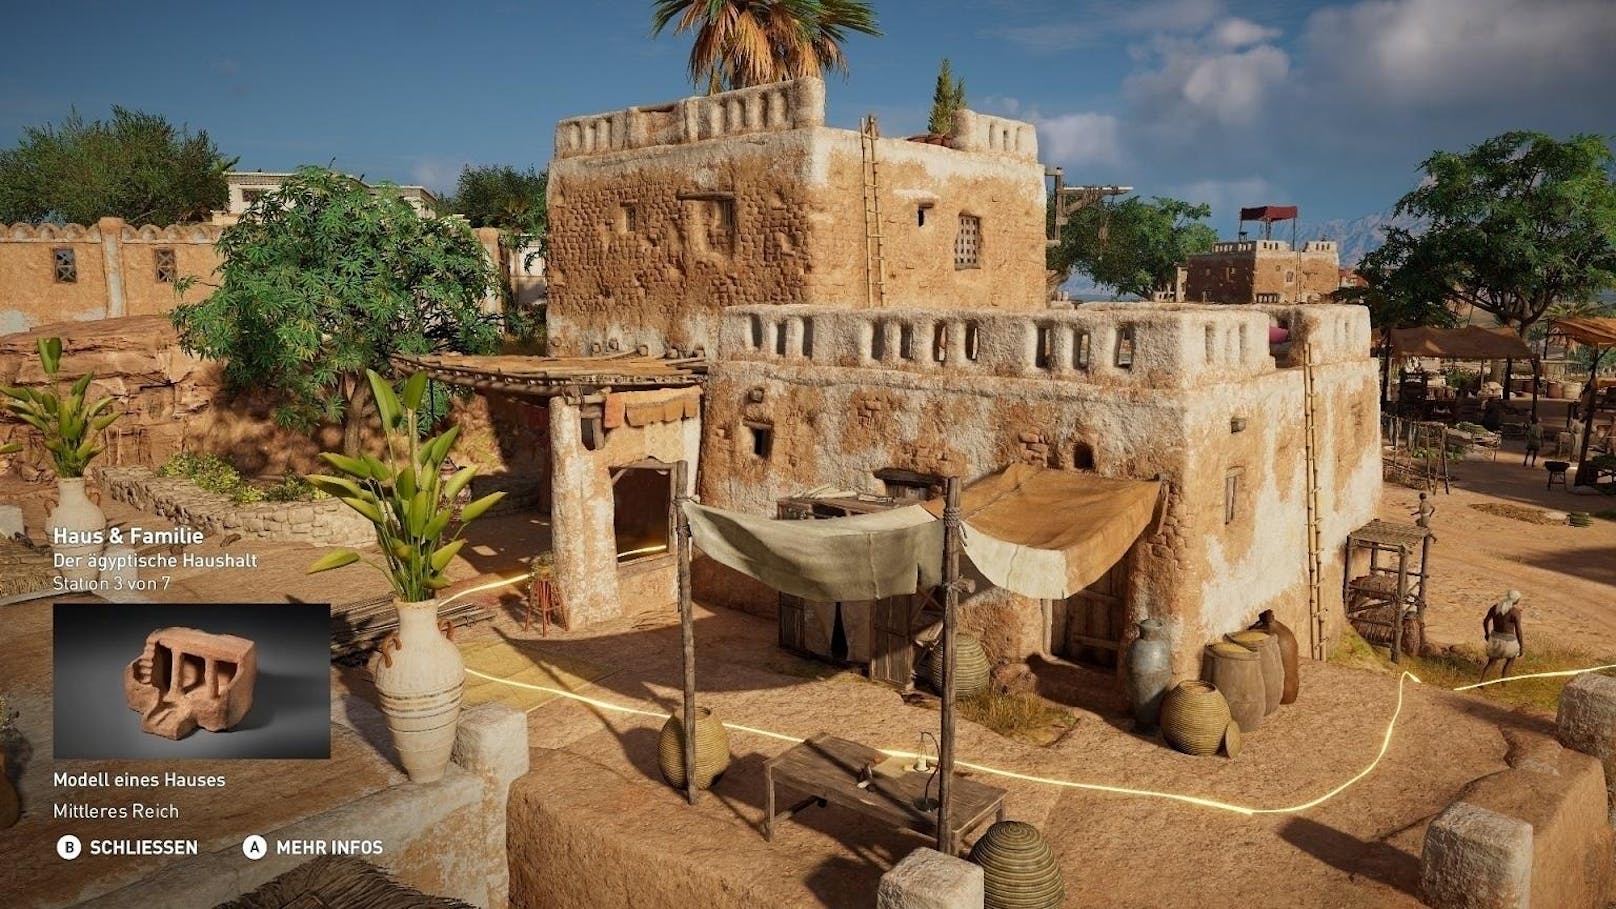 Ubisofts Discovery Tour by Assassin's Creed: Ancient Egypt ist ein unterhaltsames und lehrreiches Tool, das es jedem erlaubt, die interaktive 3D-Nachbildung des alten Ägyptens in Assassin's Creed Origins frei von Kämpfen, Zeitdruck oder Beschränkungen durch die Spielinhalte zu erleben. Die Discovery Tour steht ab sofort auf PS4, Xbox und PC ohne Aufpreis allen Besitzern des Spiels zur Verfügung. Sie wird ebenfalls separat für PC via Uplay und Steam zum Preis von 19,99 Euro erhältlich sein.